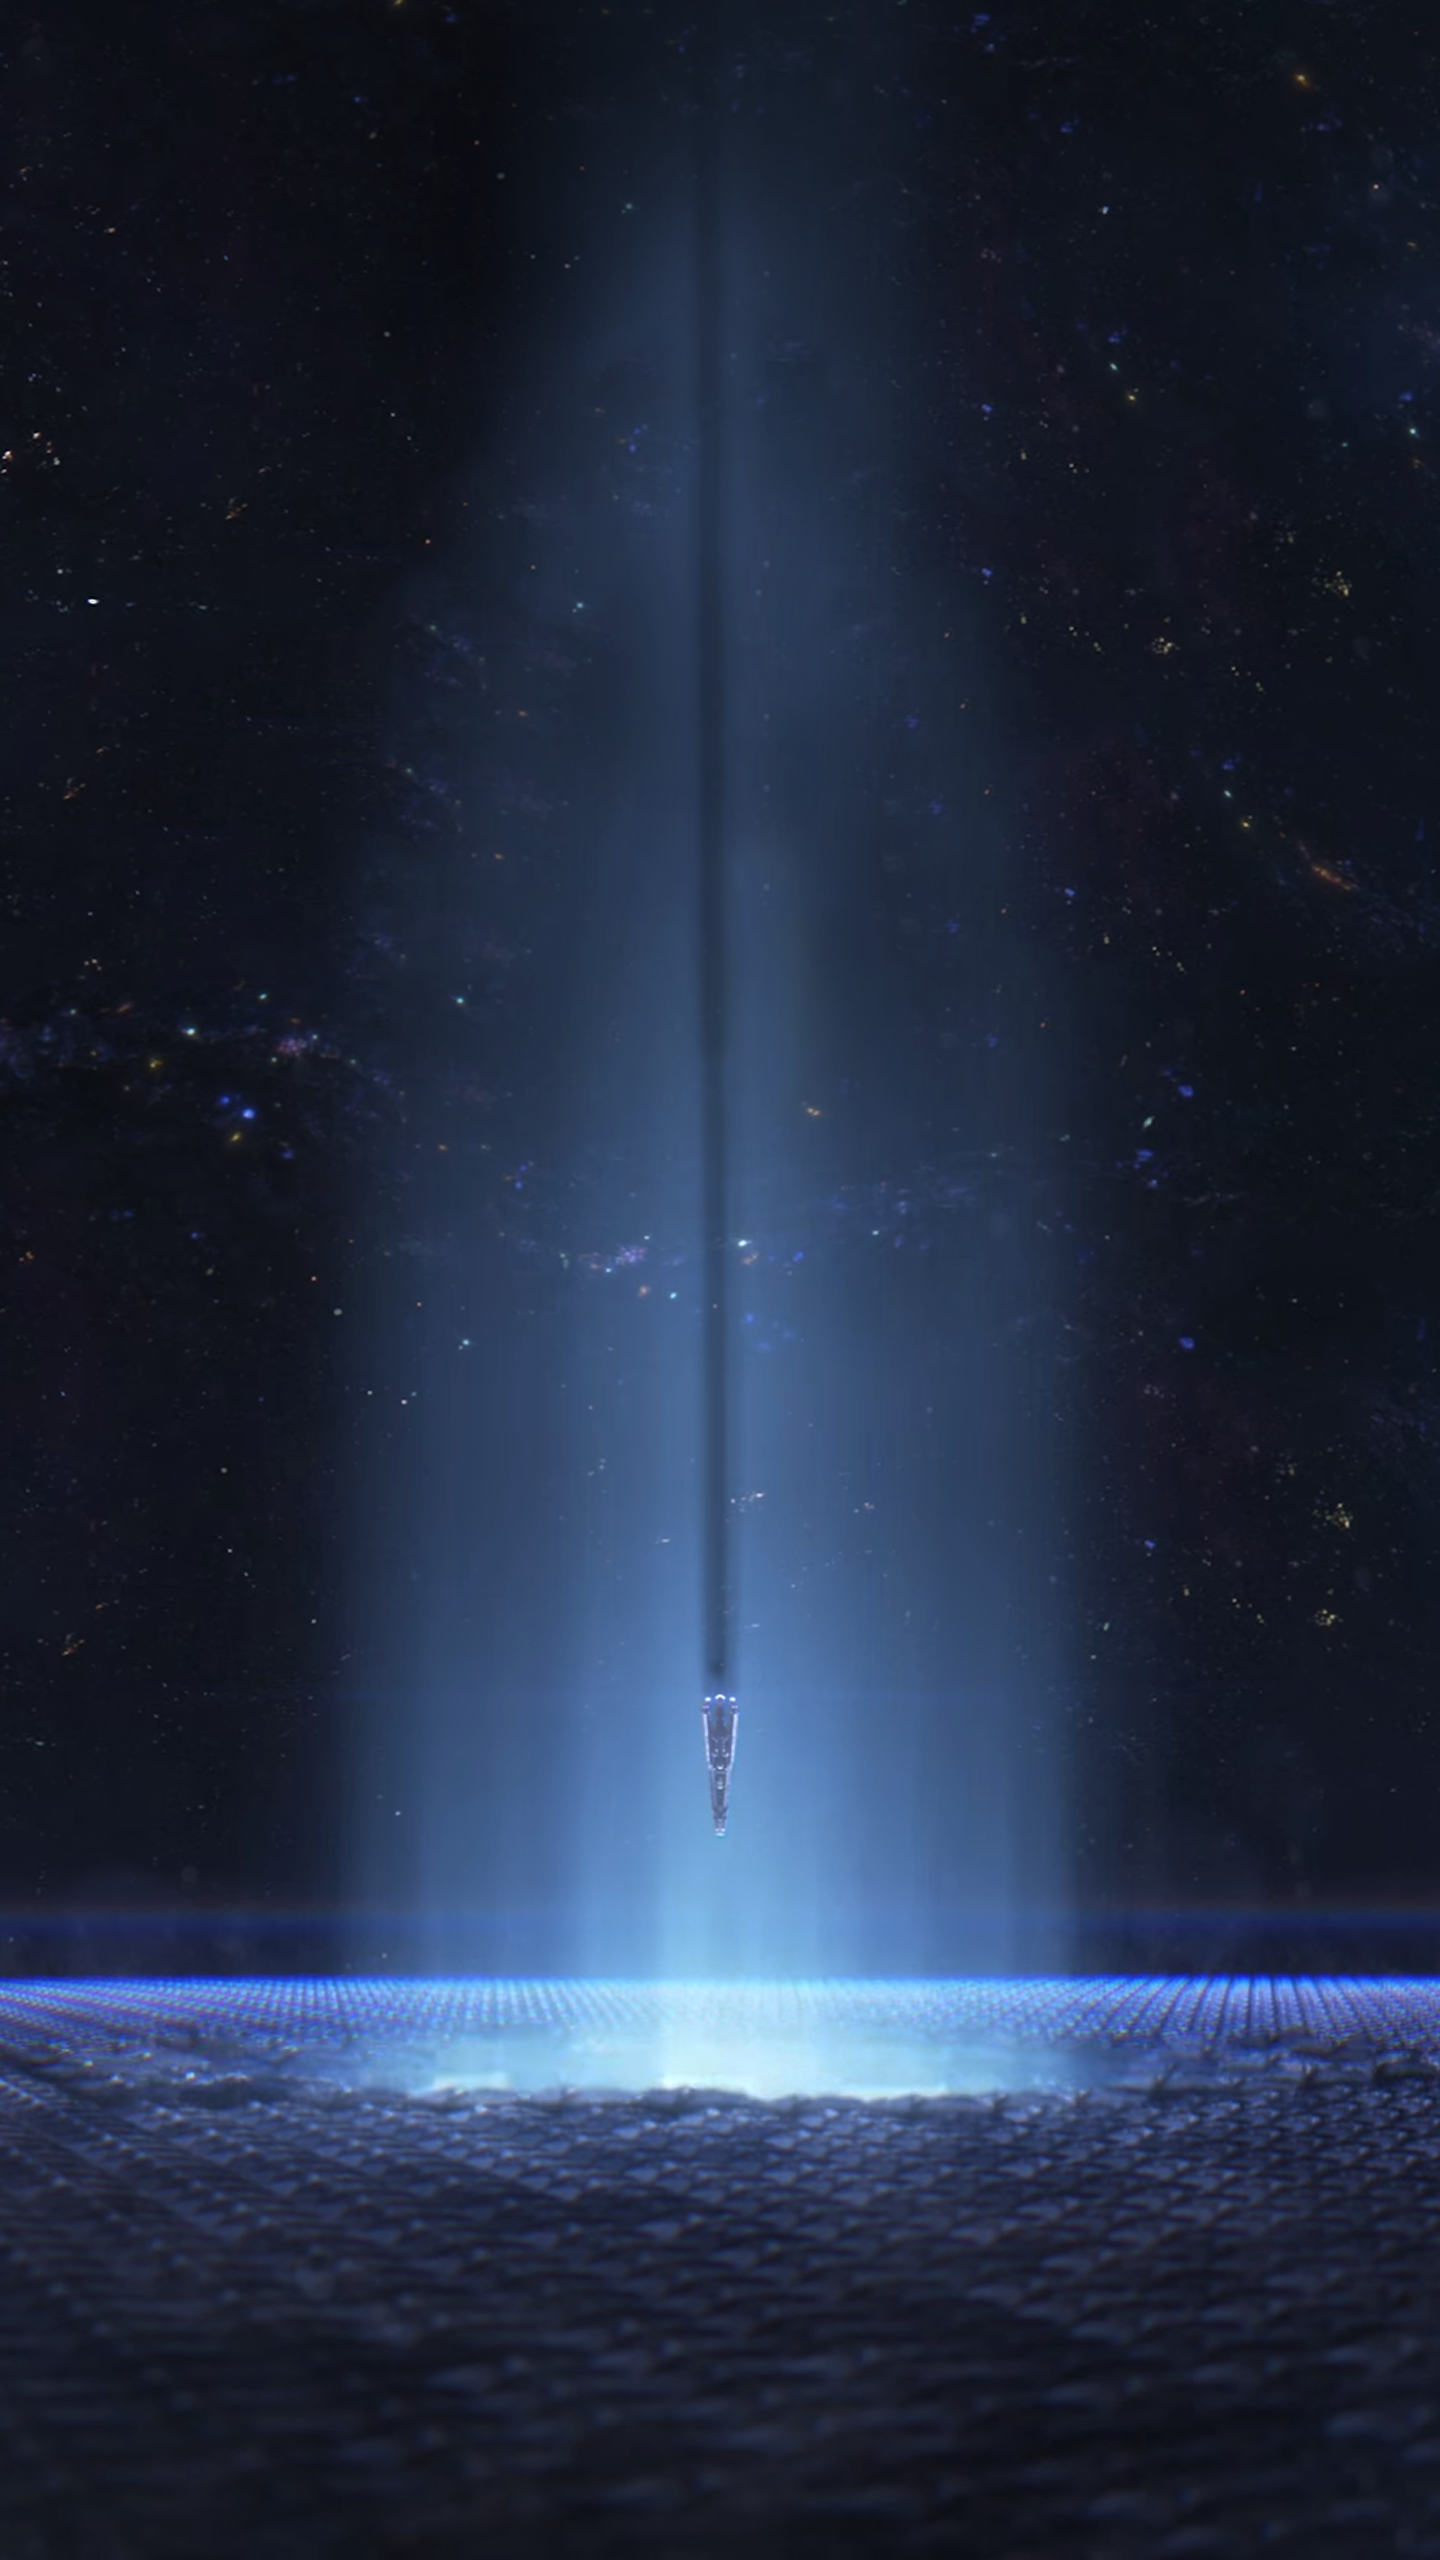 Mass Effect Andromeda на мобильном [1440x2560] | Галерея обоев Mass Effect Обои для телефона